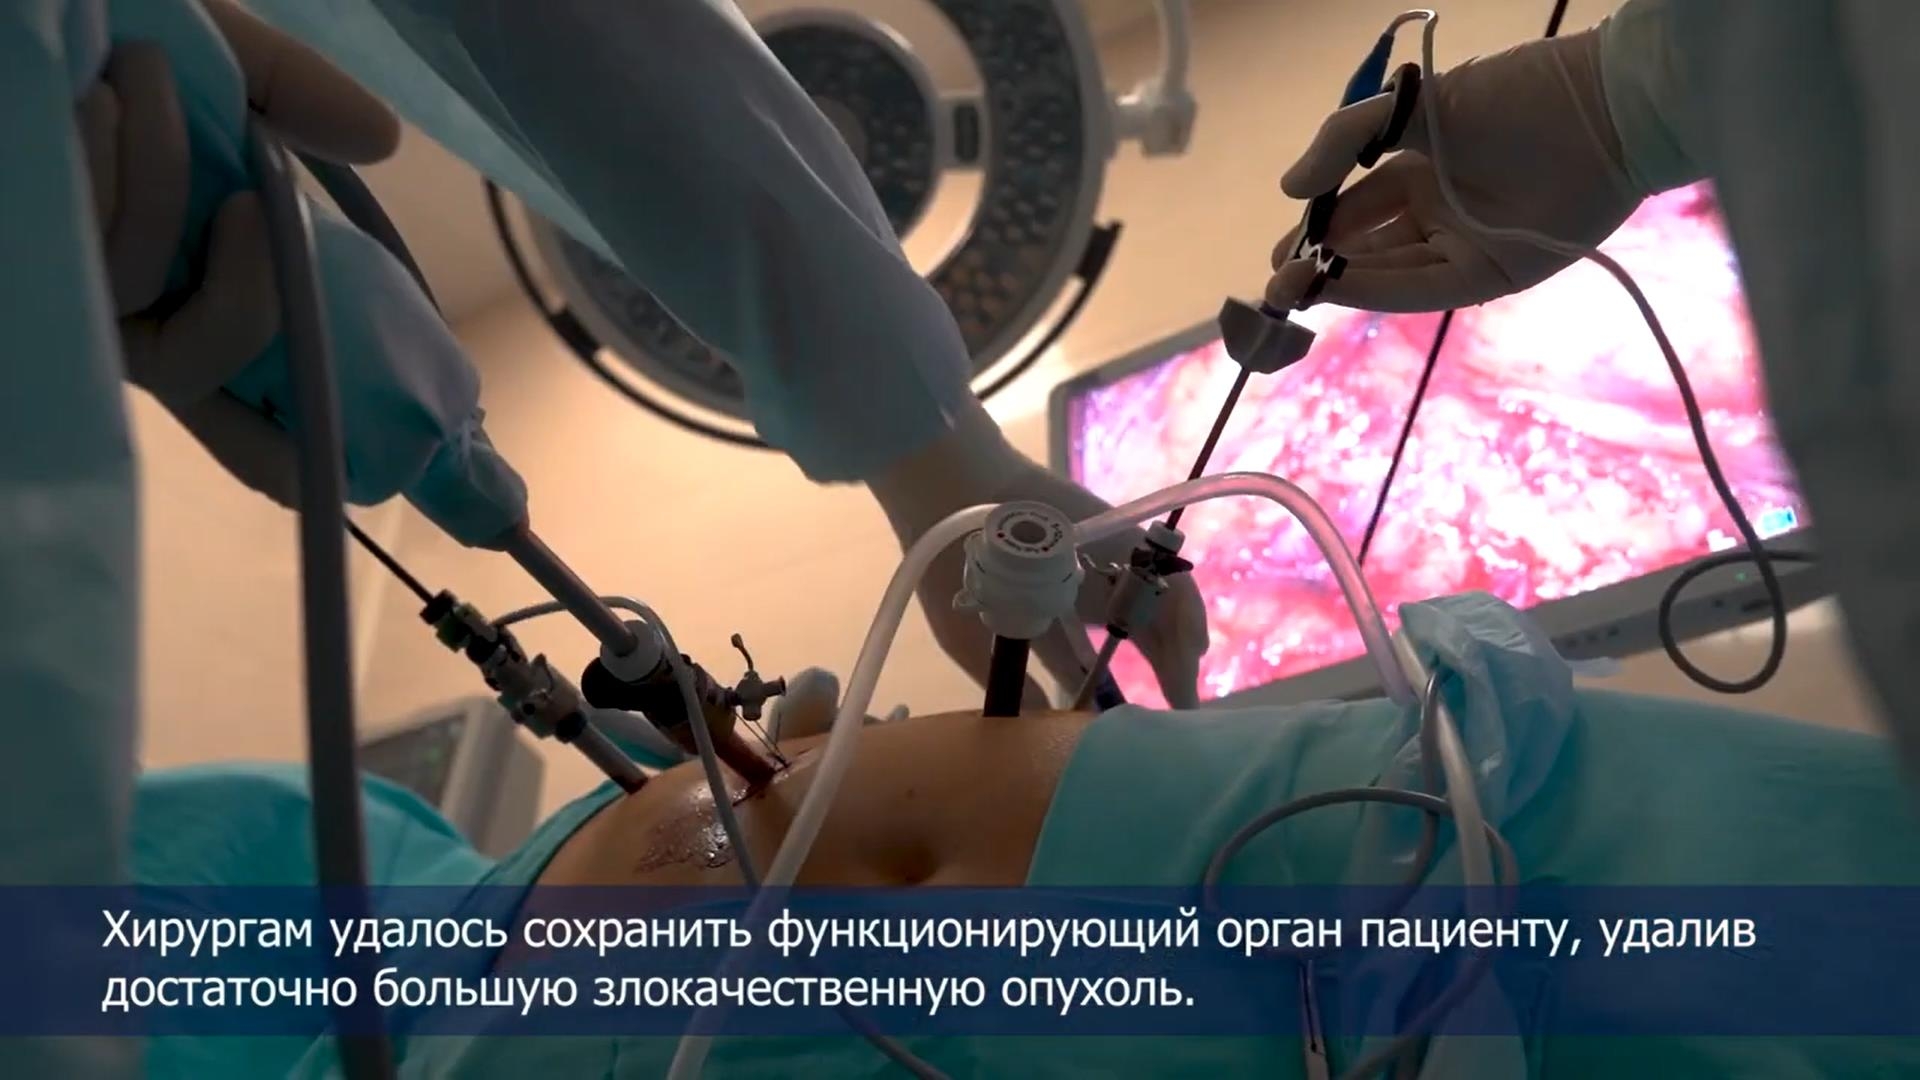 Урологи Сеченовского Университета перед операцией применяют уникальную 3D-программу